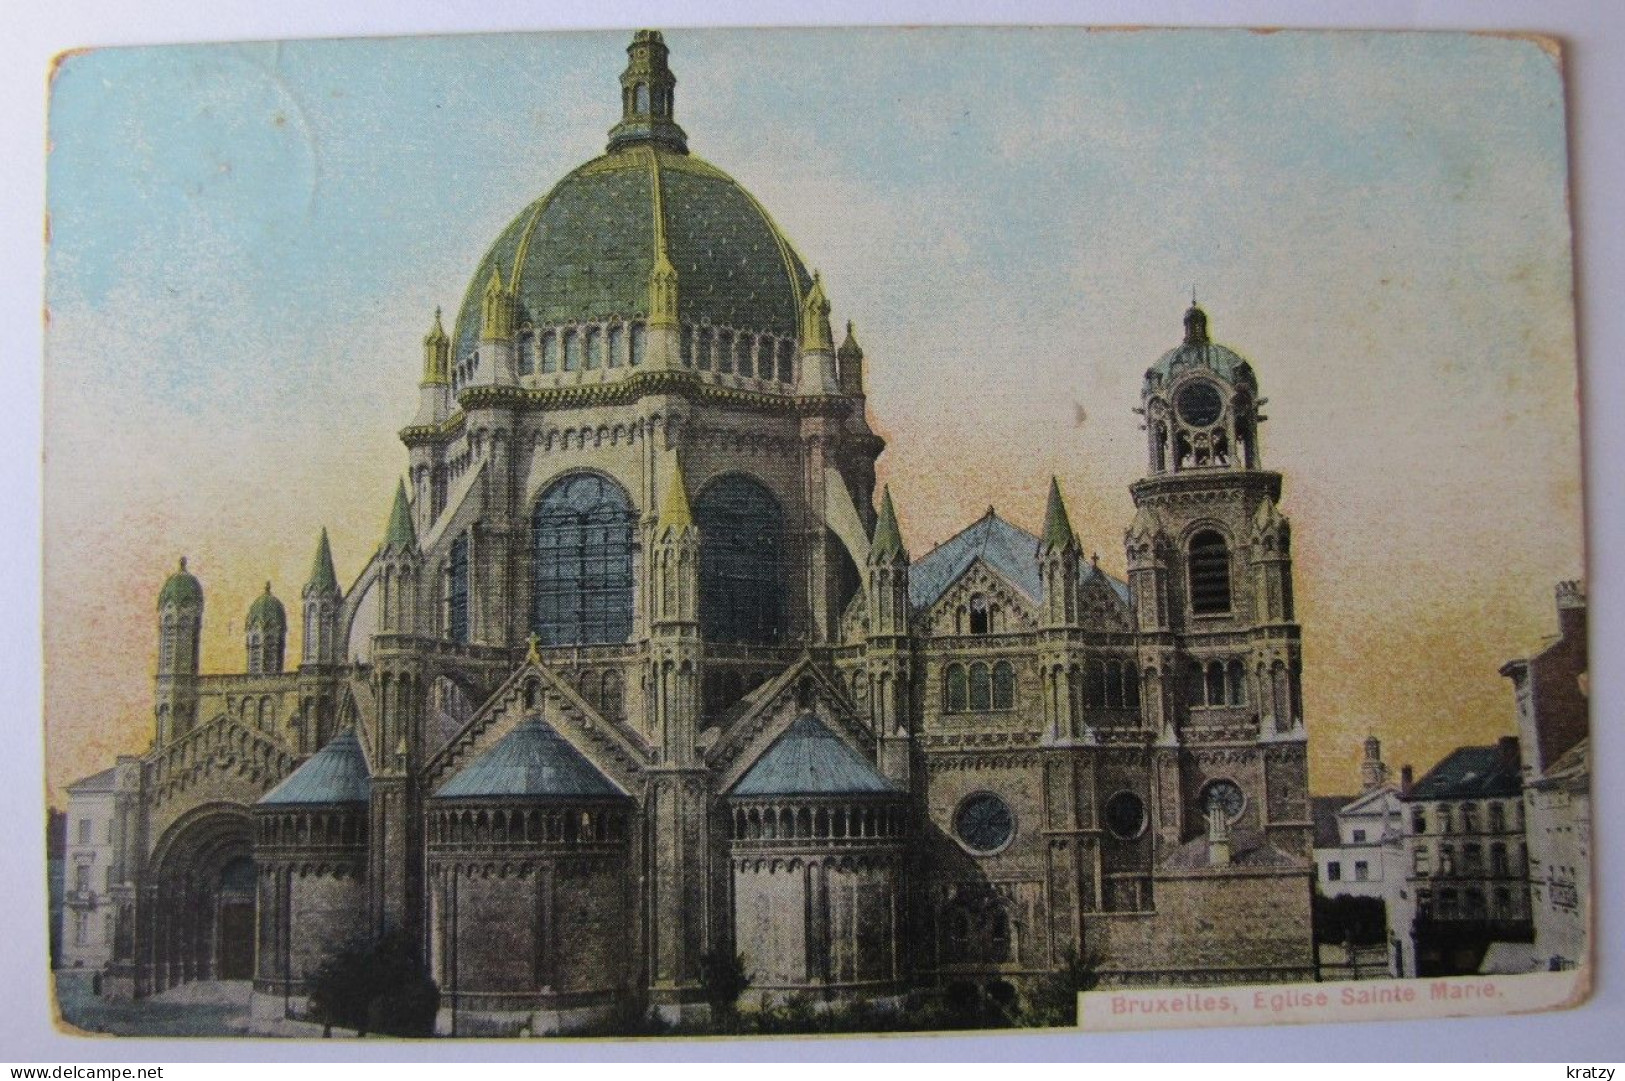 BELGIQUE - BRUXELLES - L'Eglise Sainte-Marie - Monuments, édifices